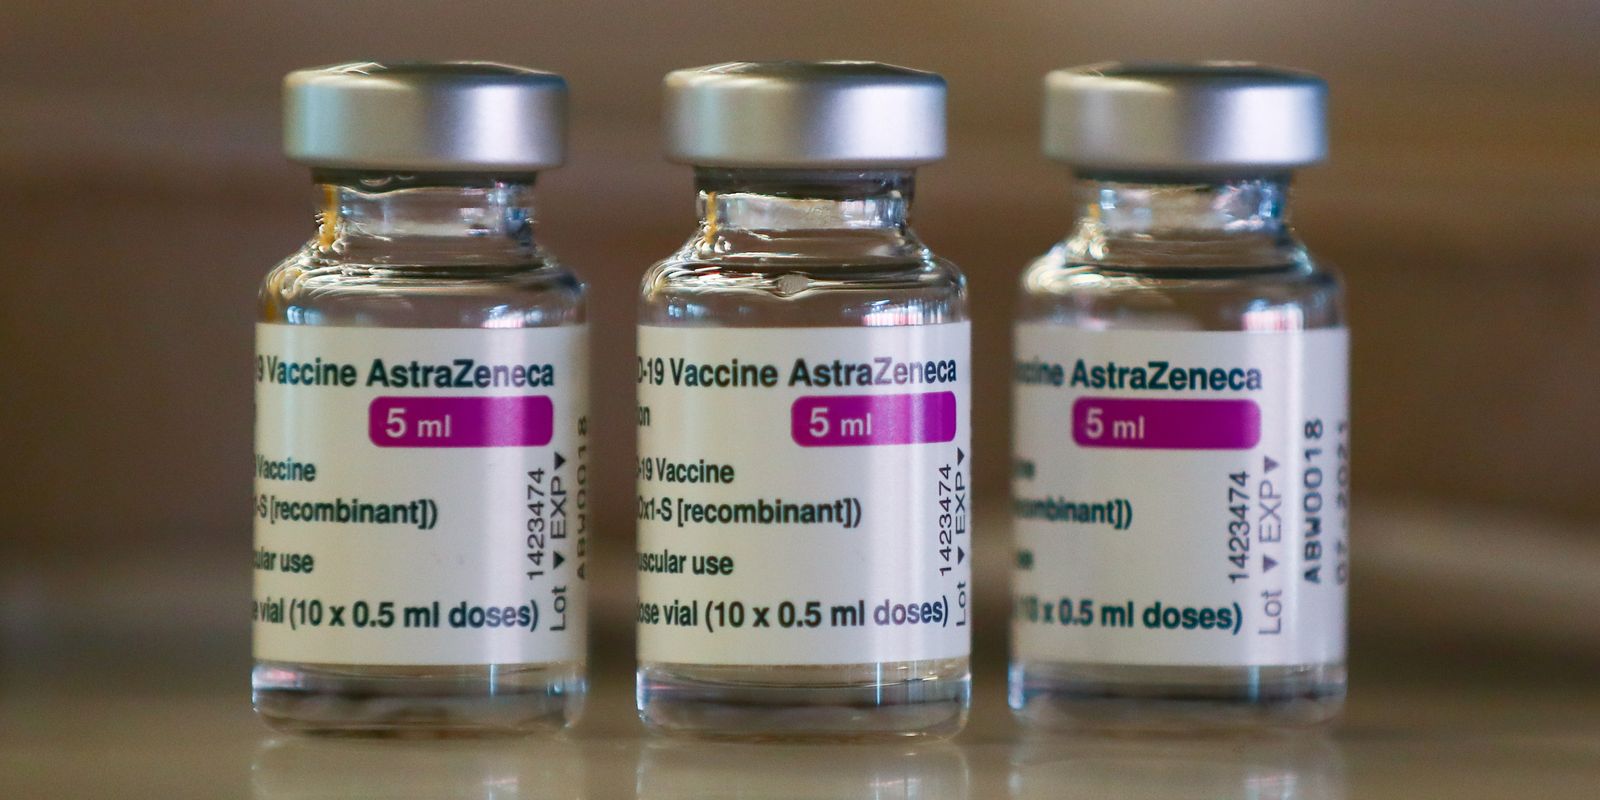 Brasil deve receber em maio 4 milhões de doses da AstraZeneca |  Radioagência Nacional